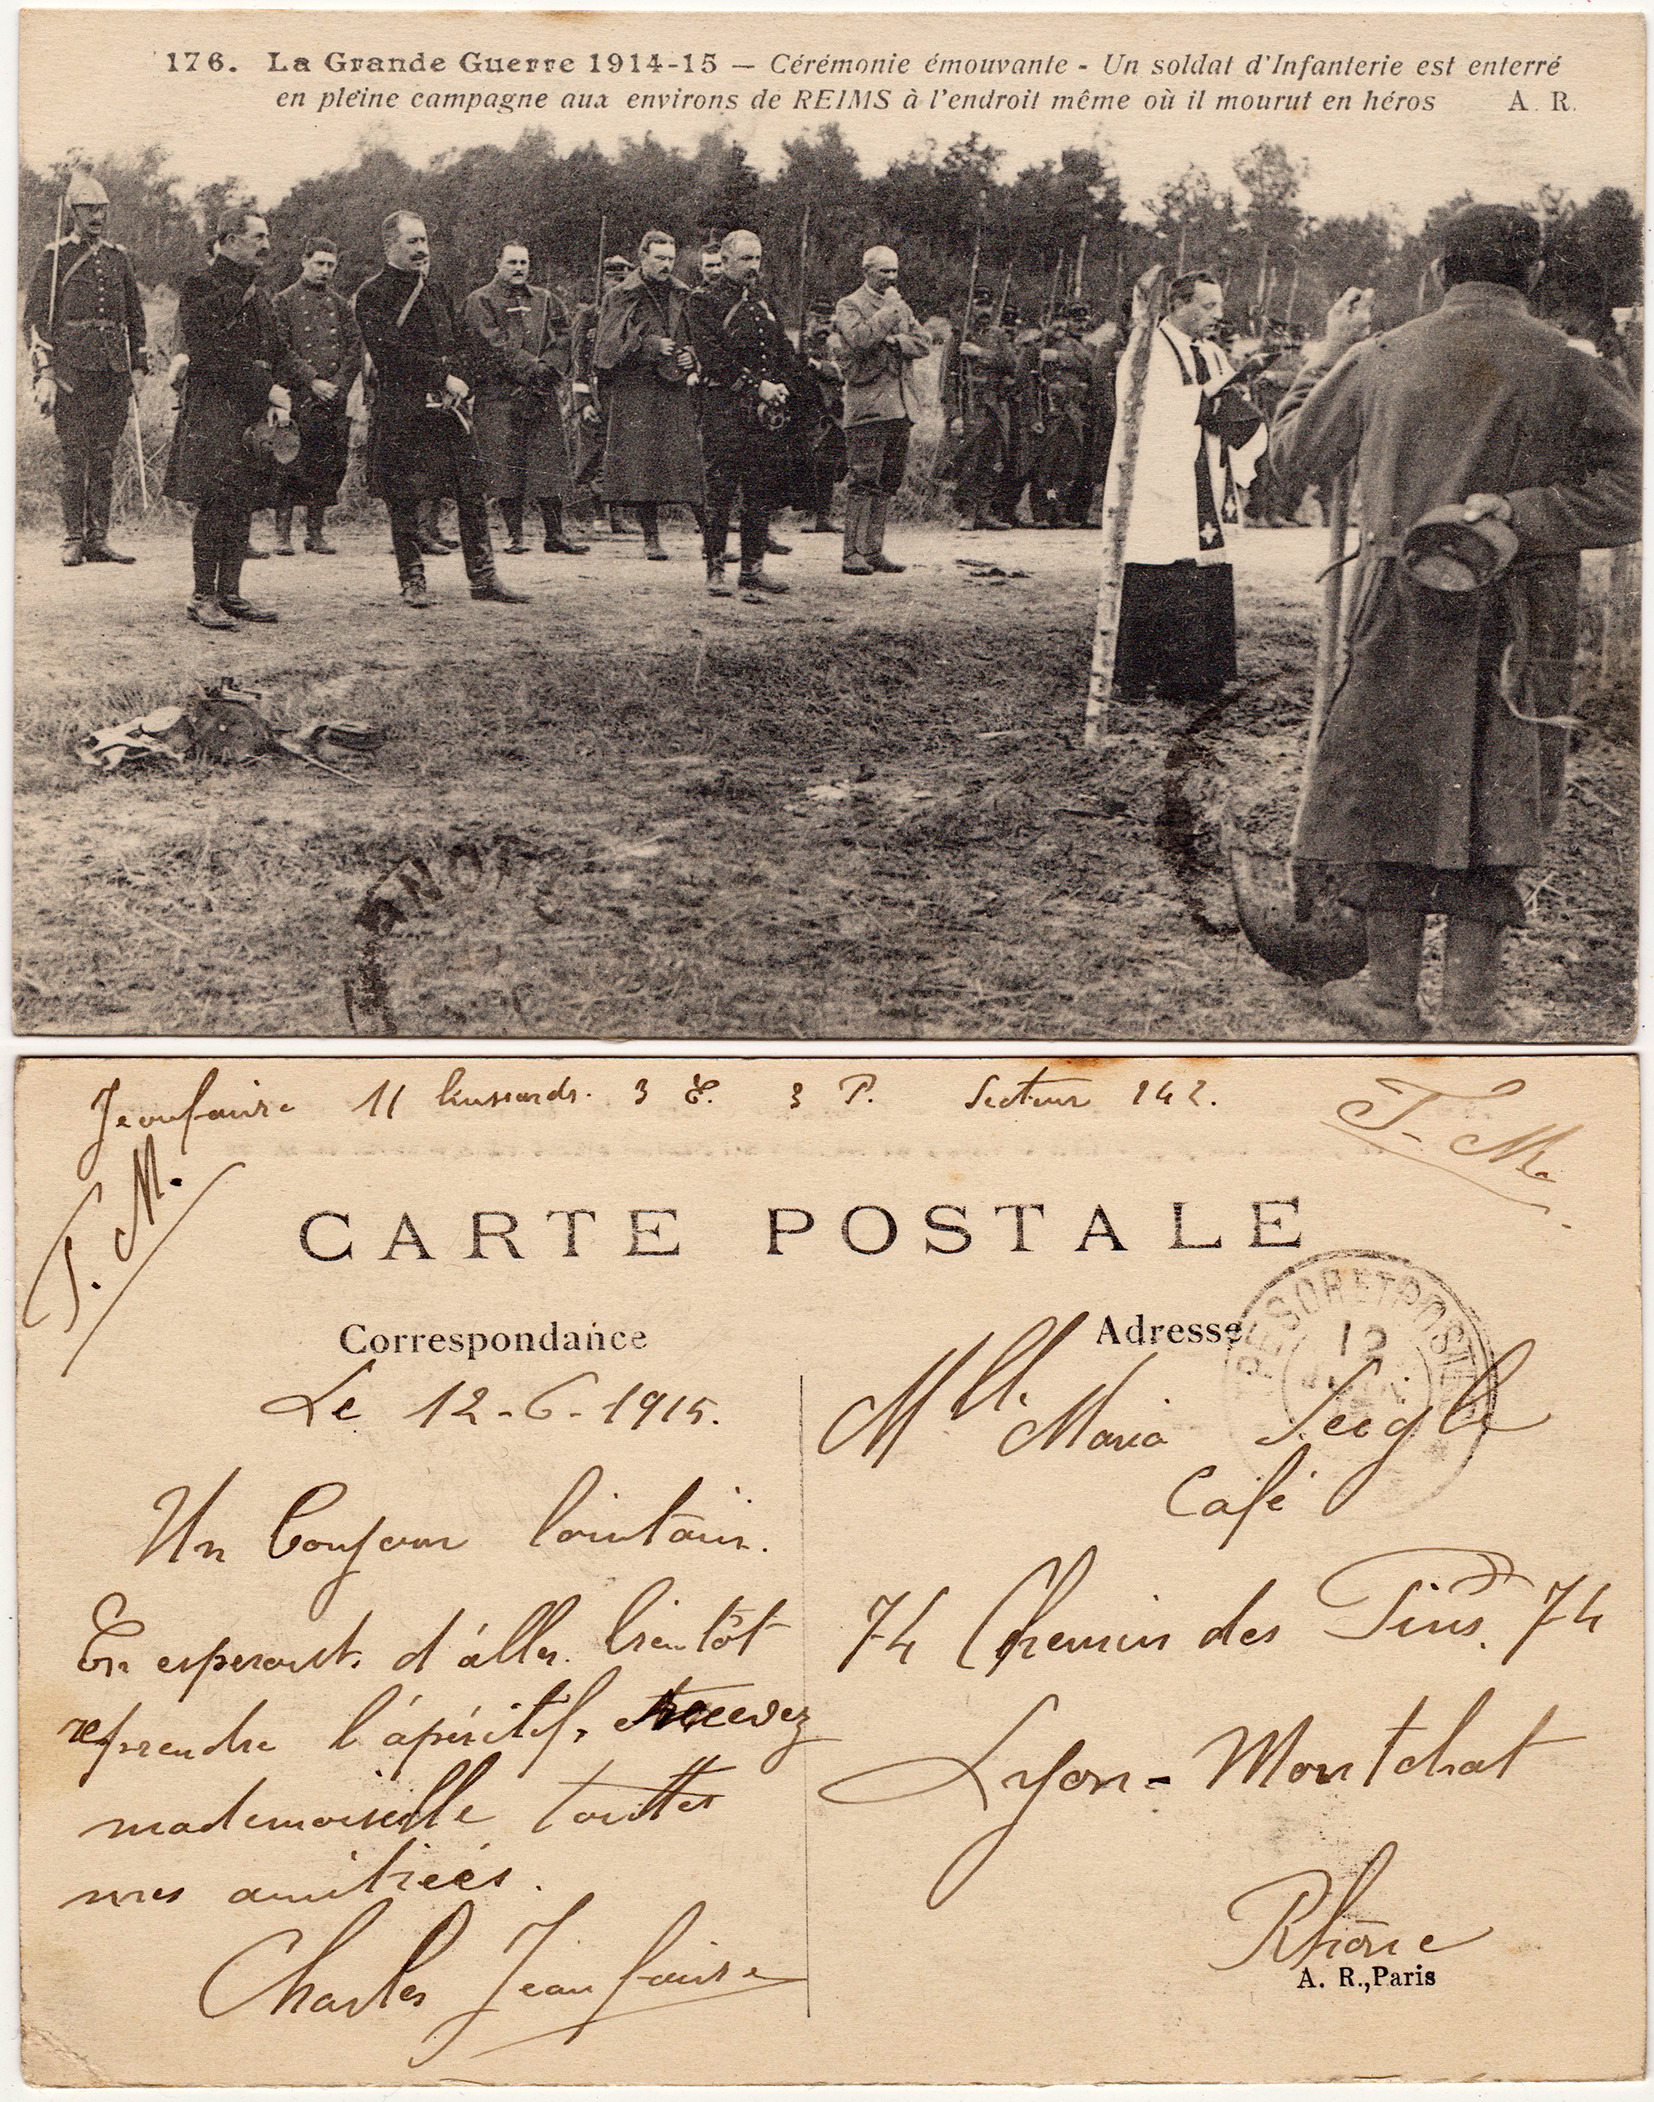 Cartes postales patriotiques françaises de la Grande Guerre - recensement - Page 3 Cf79a6d695a7fceb70dd1cb5521cd39c0d5454a5